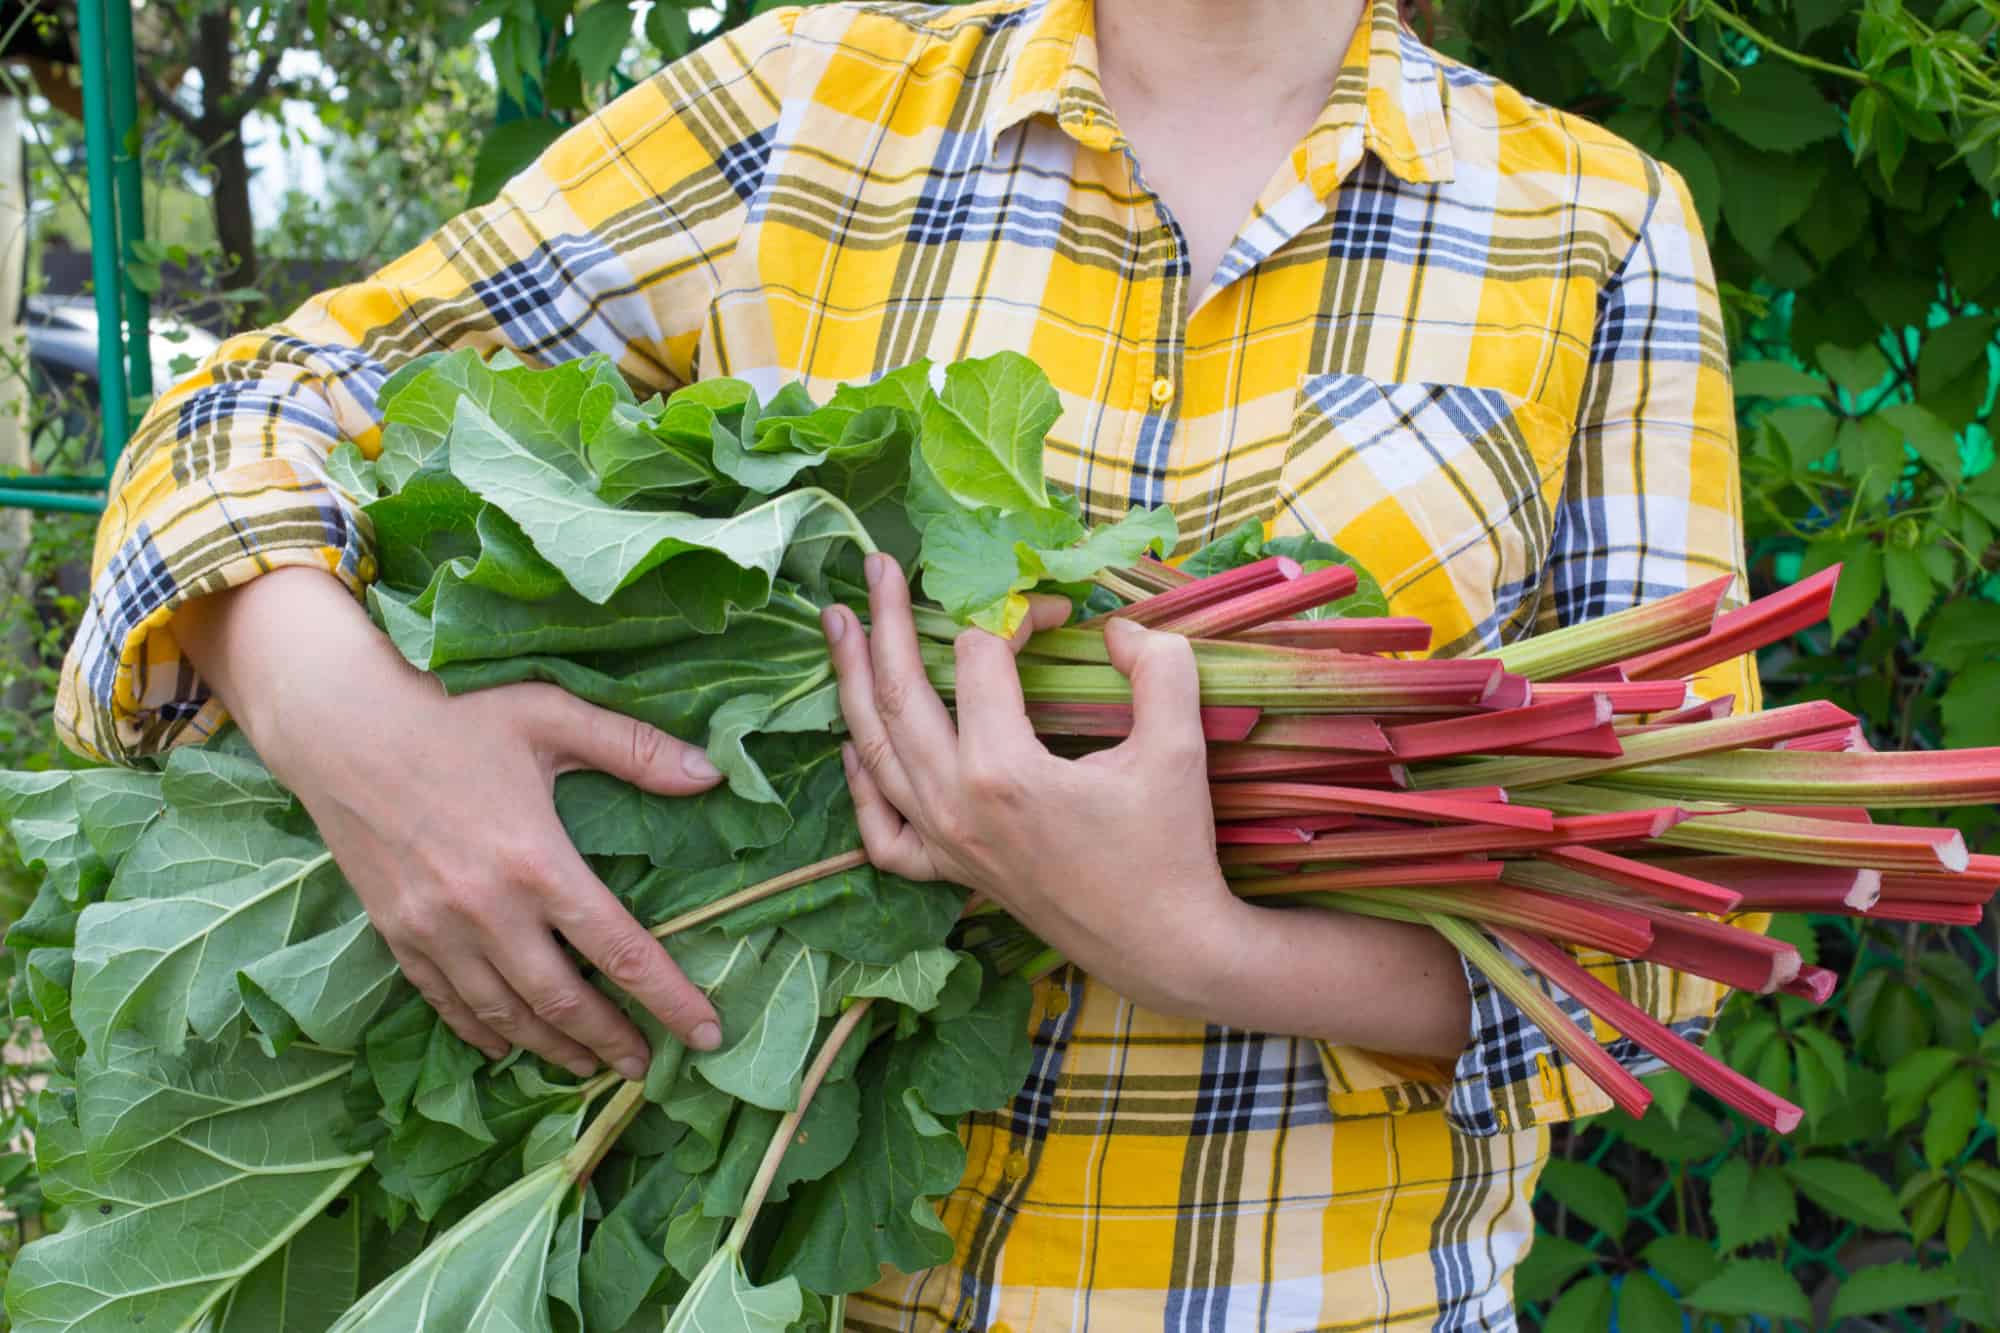 rhubarb harvest in arms